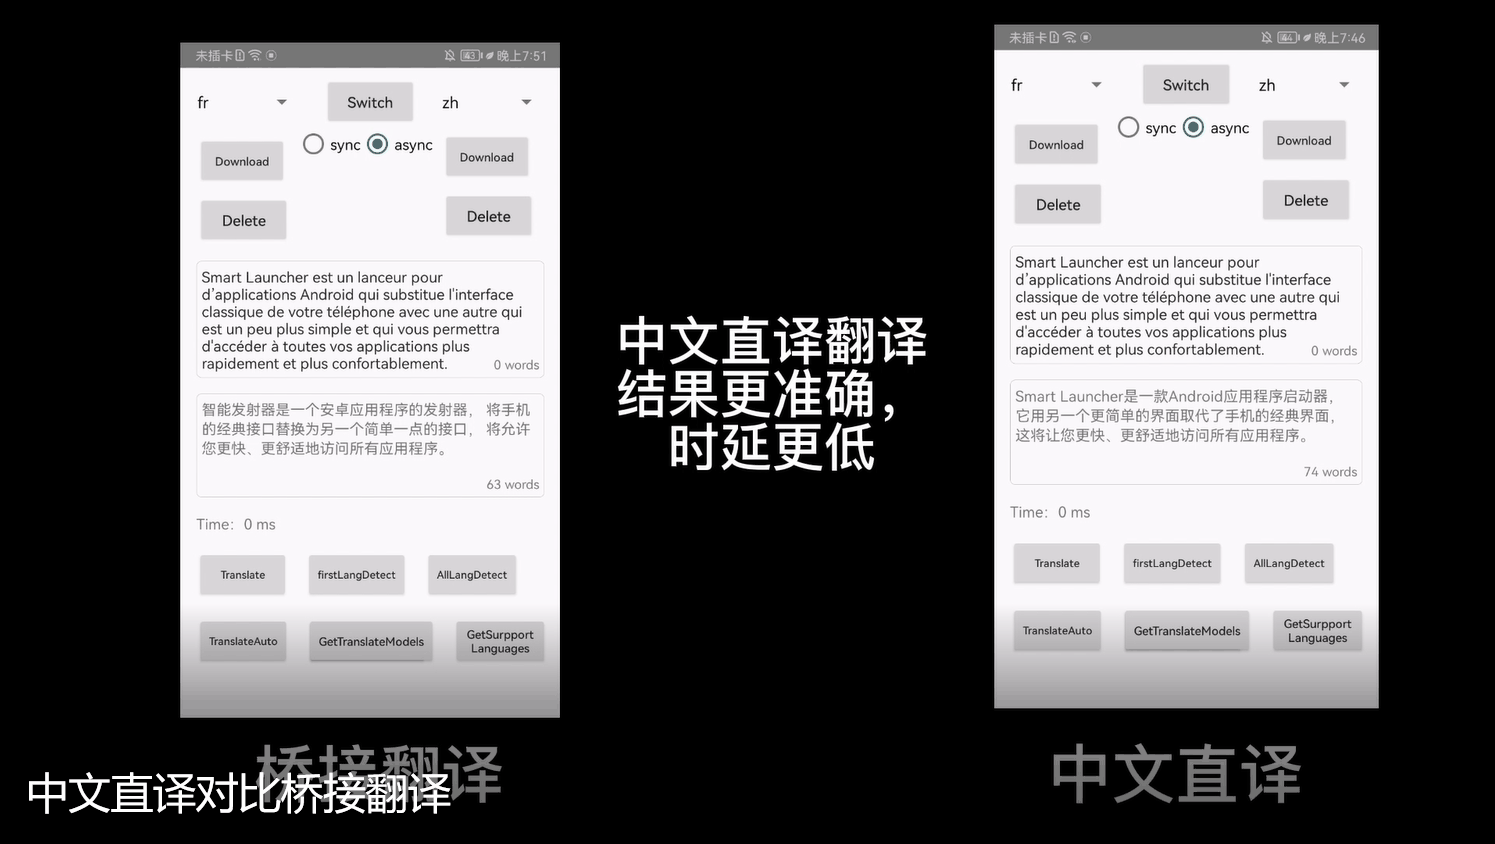 机器学习服务文本翻译能力升级，中文直译模型让译文表达更地道！「建议收藏」